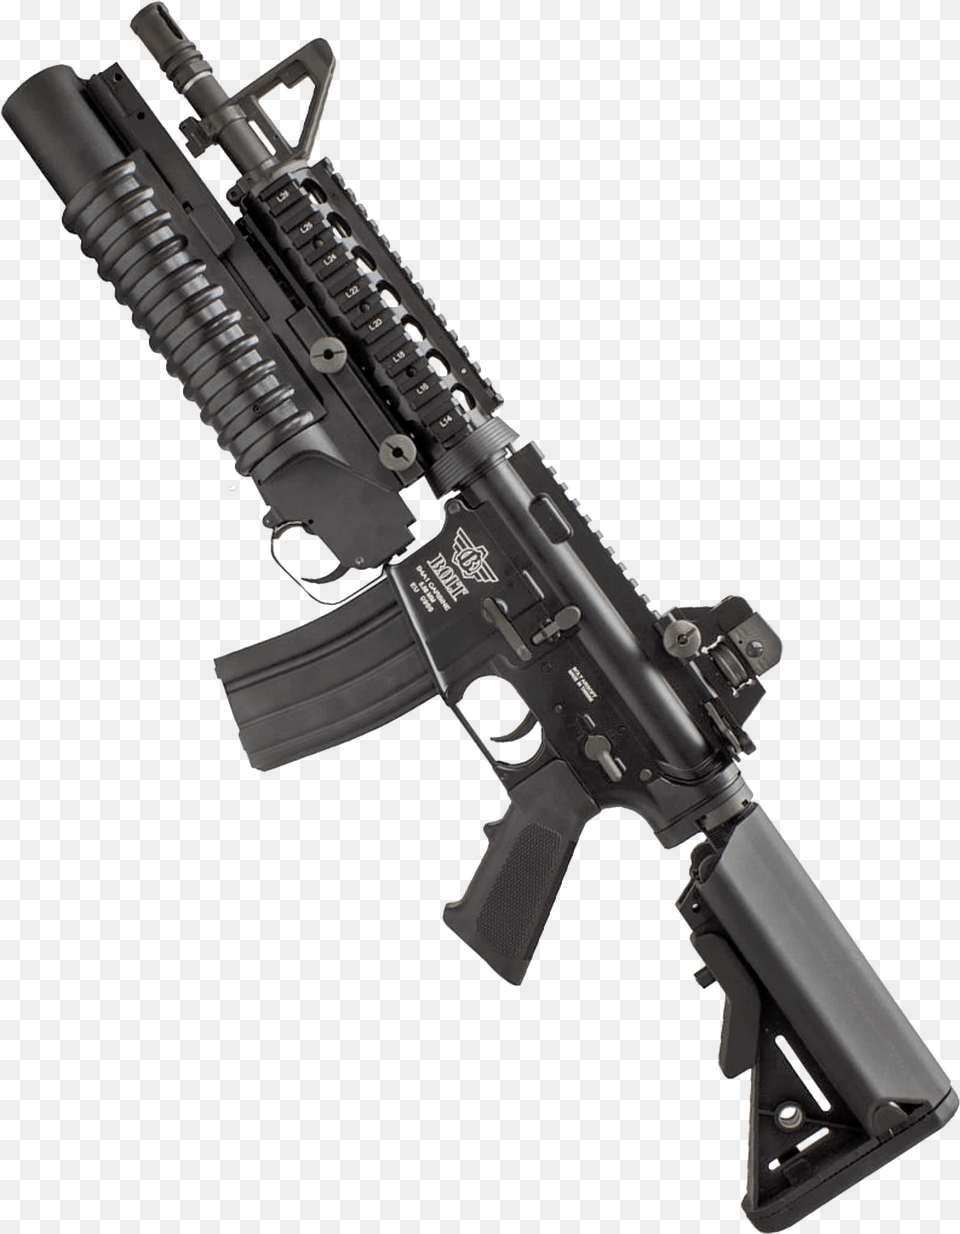 Grenade Launcher M4 Grenade Launcher, Firearm, Gun, Rifle, Weapon Free Png